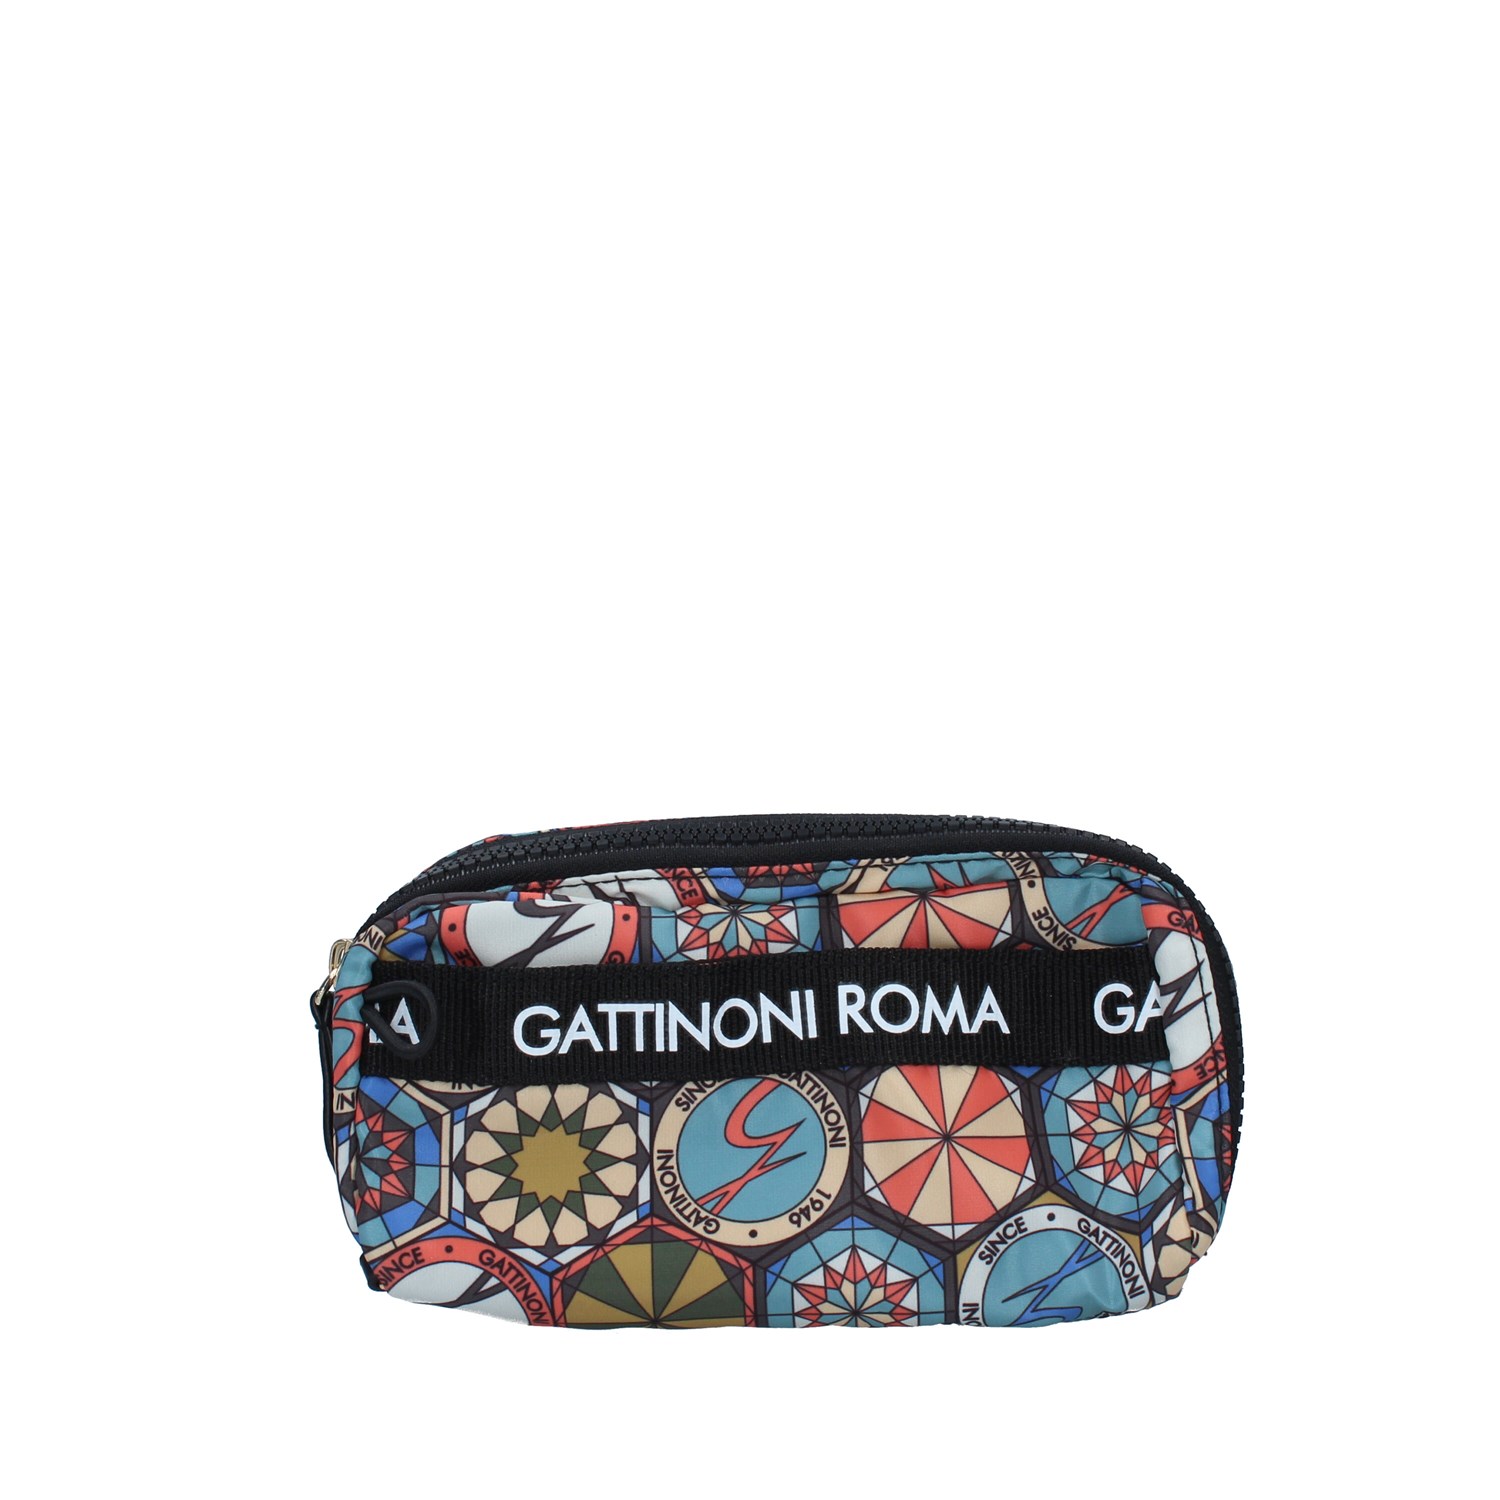 Gattinoni Roma BENTF7686WI BLACK Bags Accessories